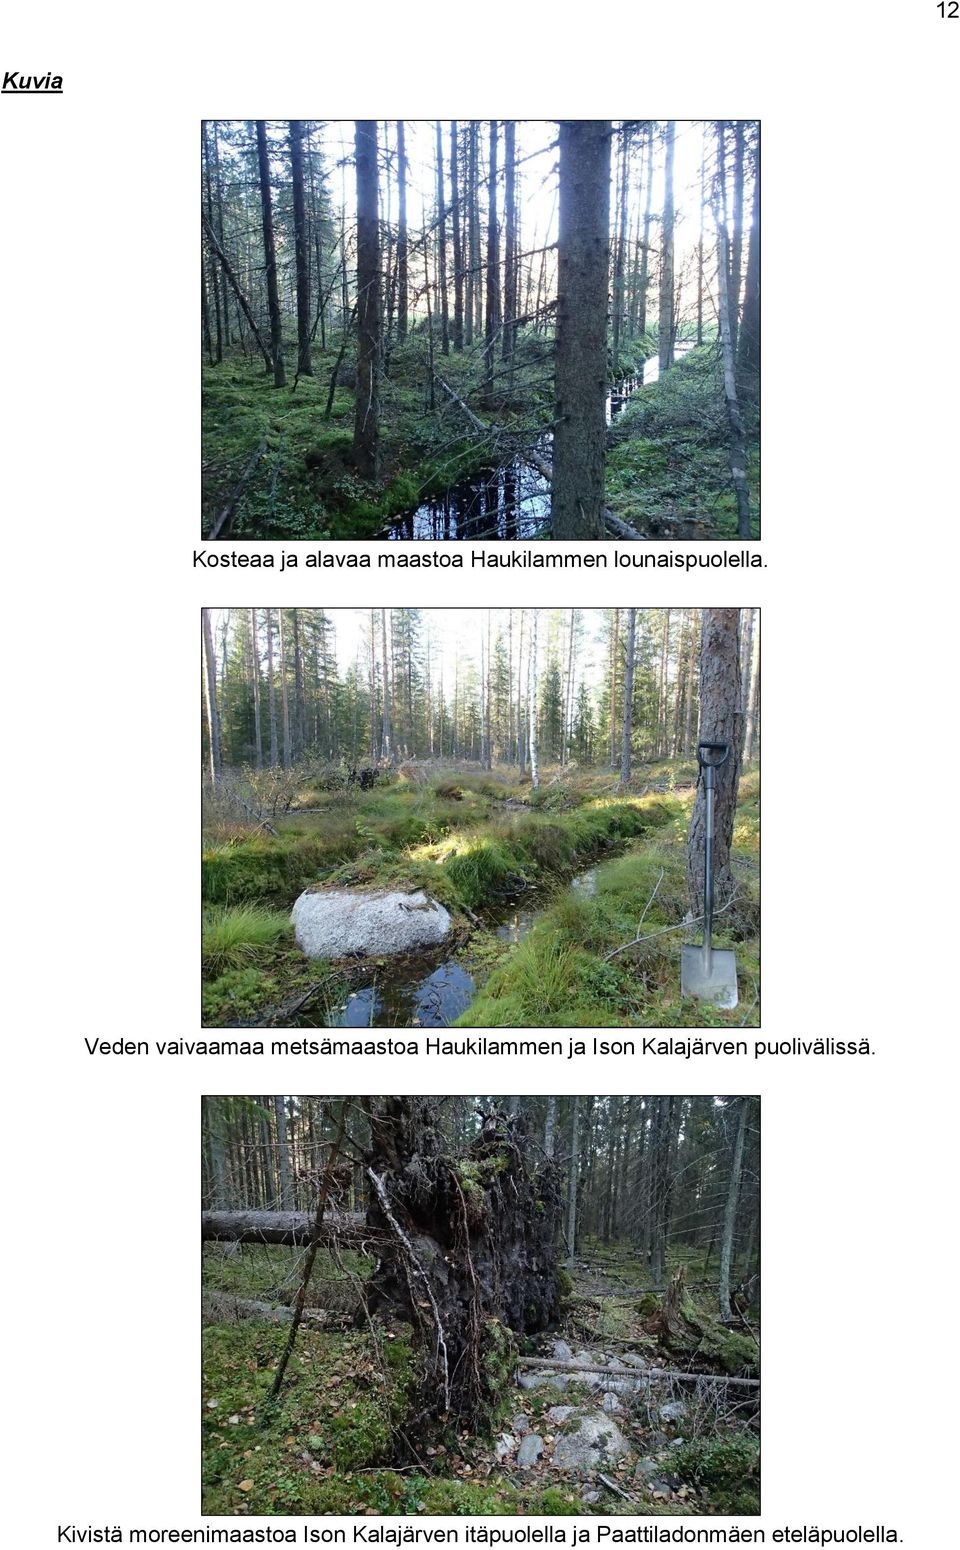 Veden vaivaamaa metsämaastoa Haukilammen ja Ison